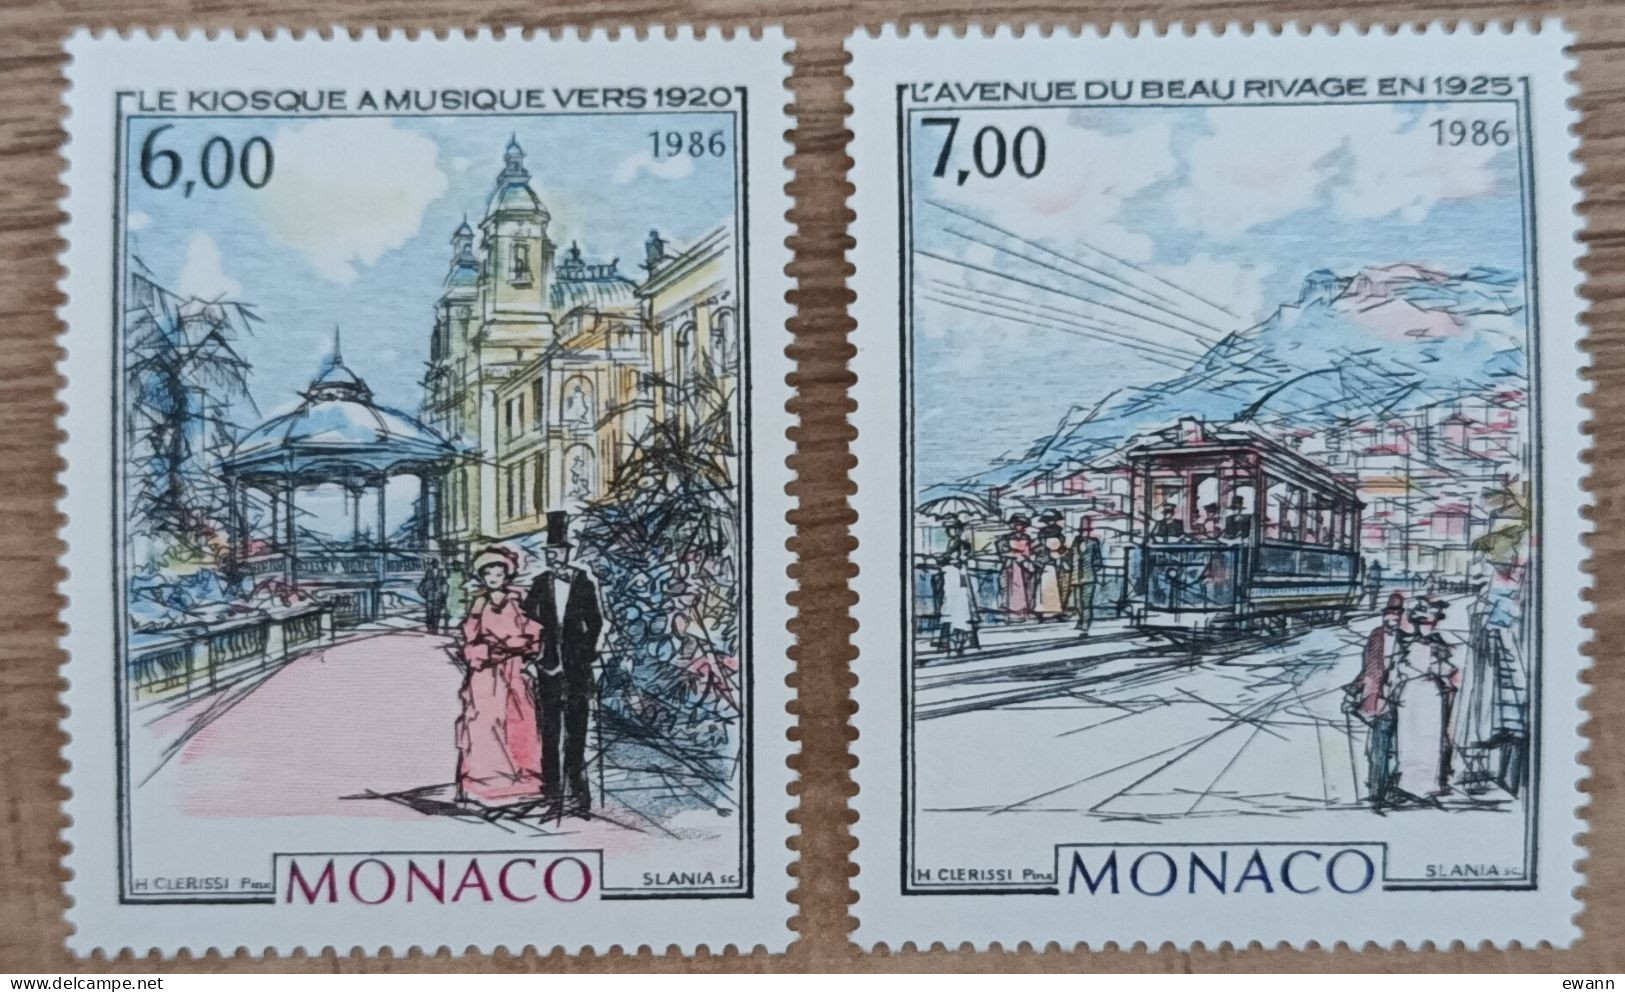 Monaco - YT N°1543, 1544 - Monaco à La Belle Epoque / Kiosque à Musique / Avenue Du Beau Rivage - 1986 - Neuf - Neufs